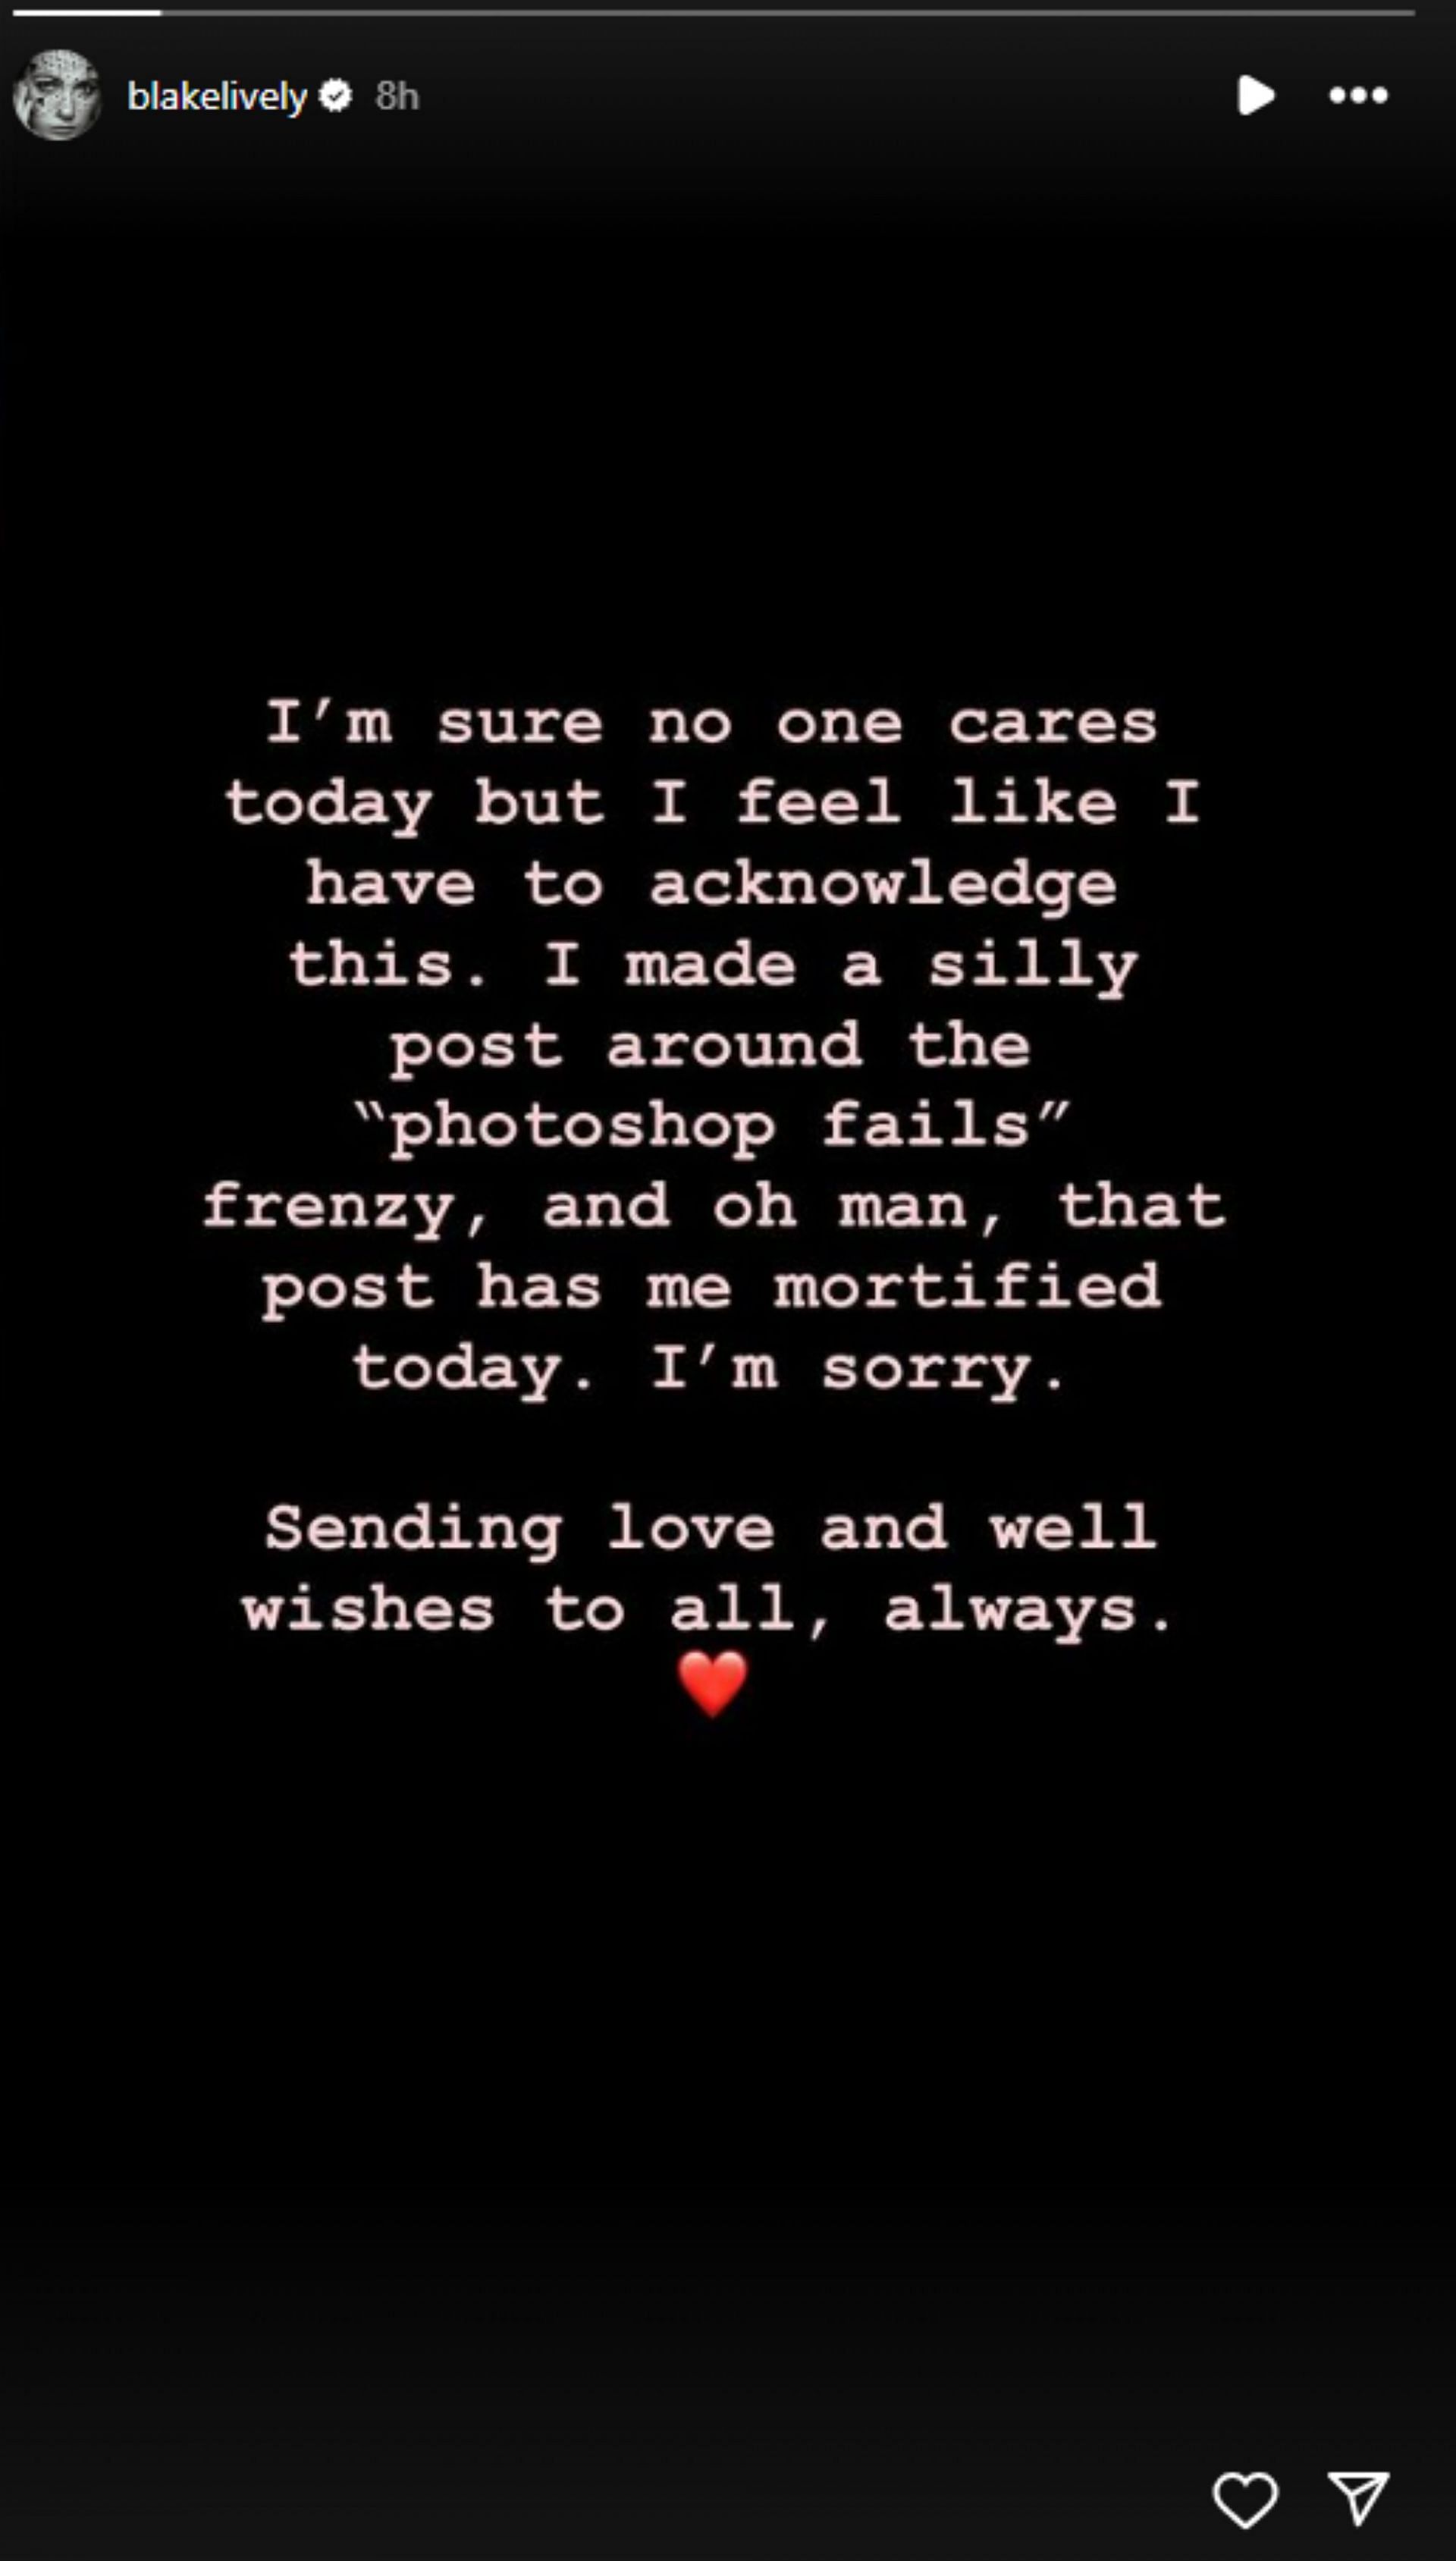 Blake Lively addresses her recent promotional post (Image via blakelively/ Instagram)